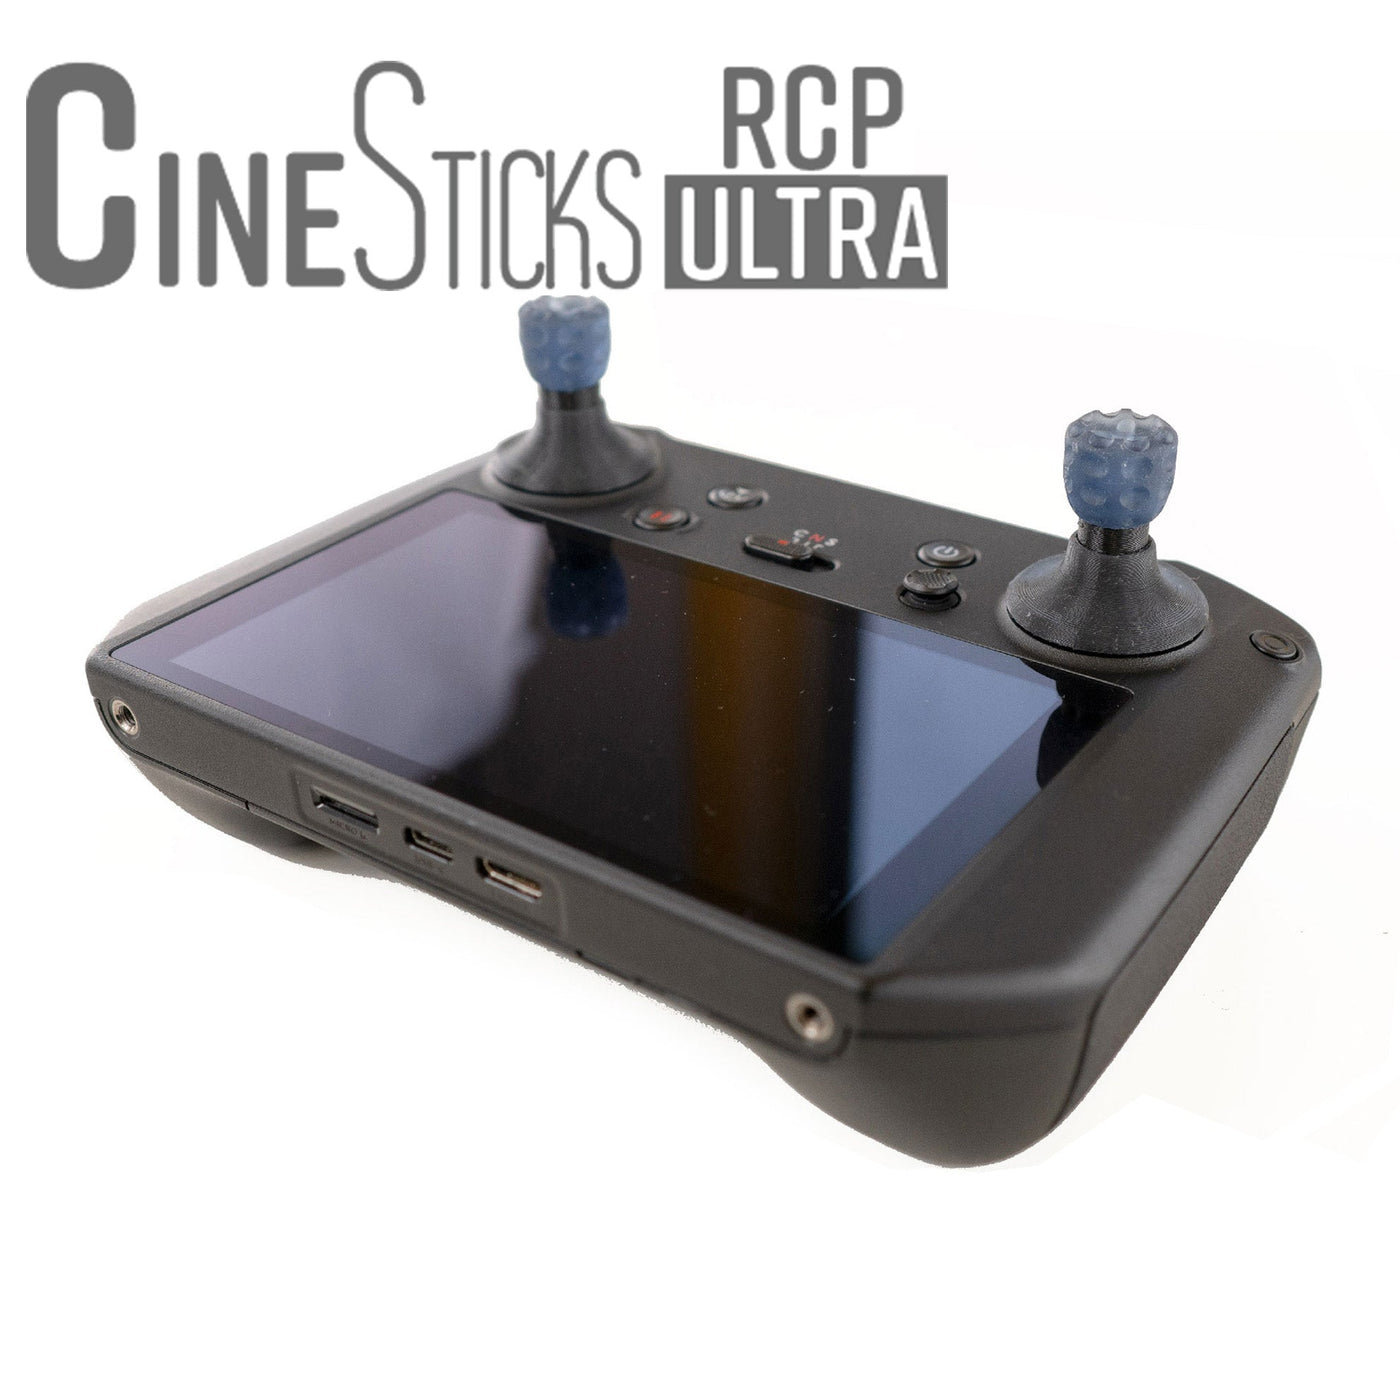 CineSticks RCP Pro